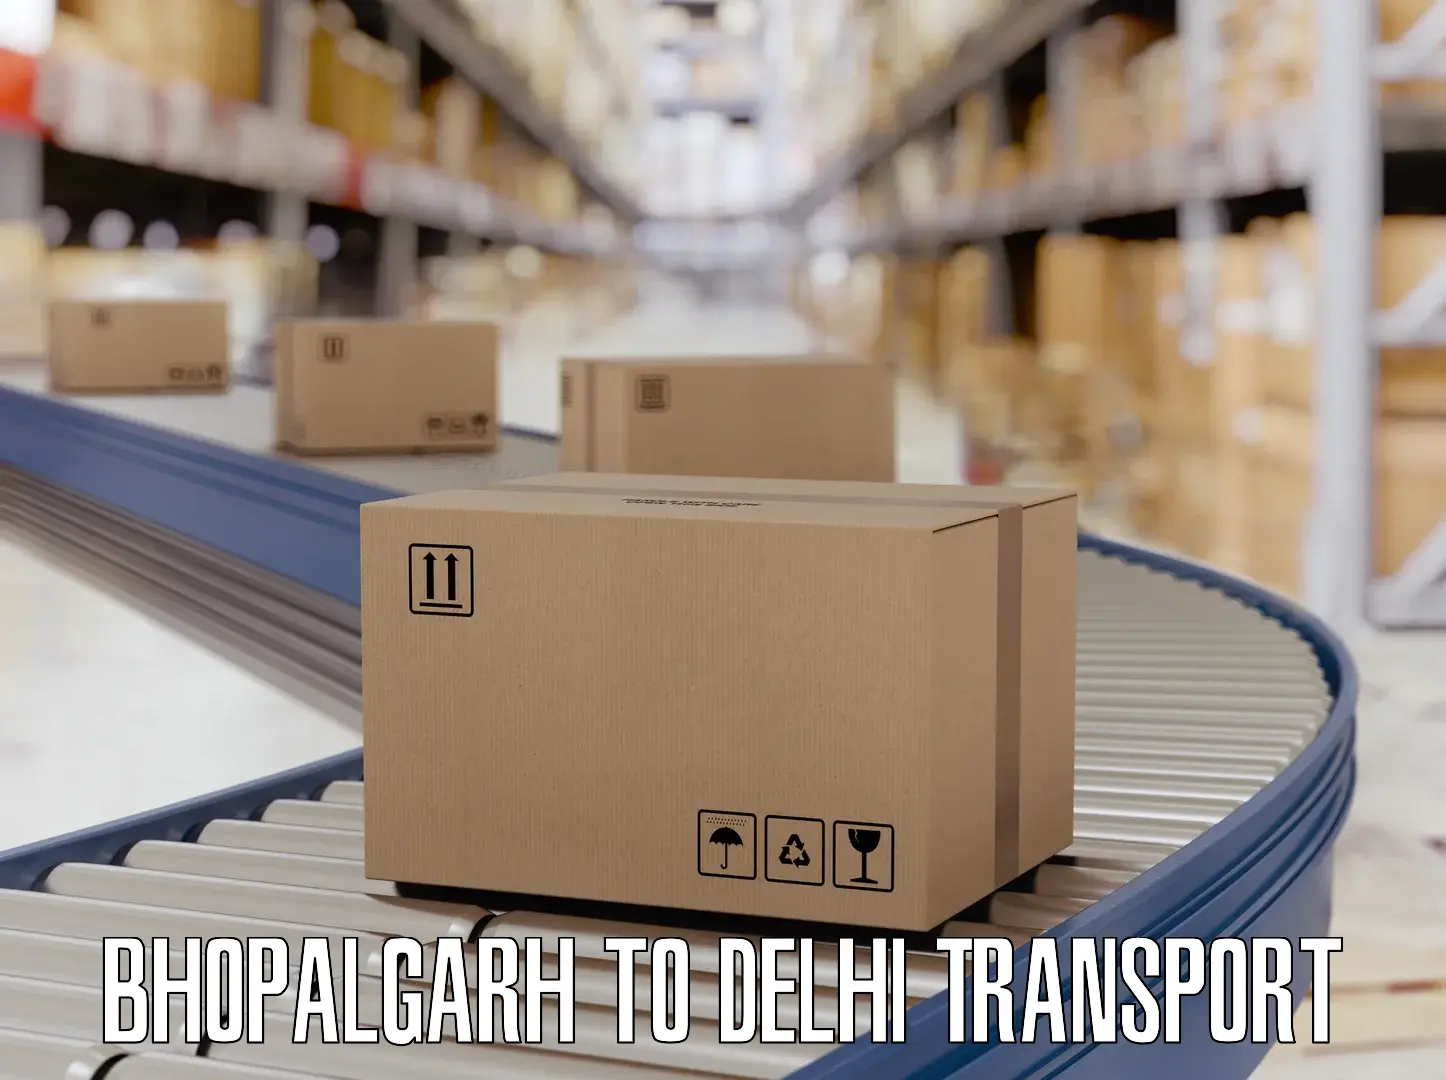 Bike shipping service Bhopalgarh to University of Delhi